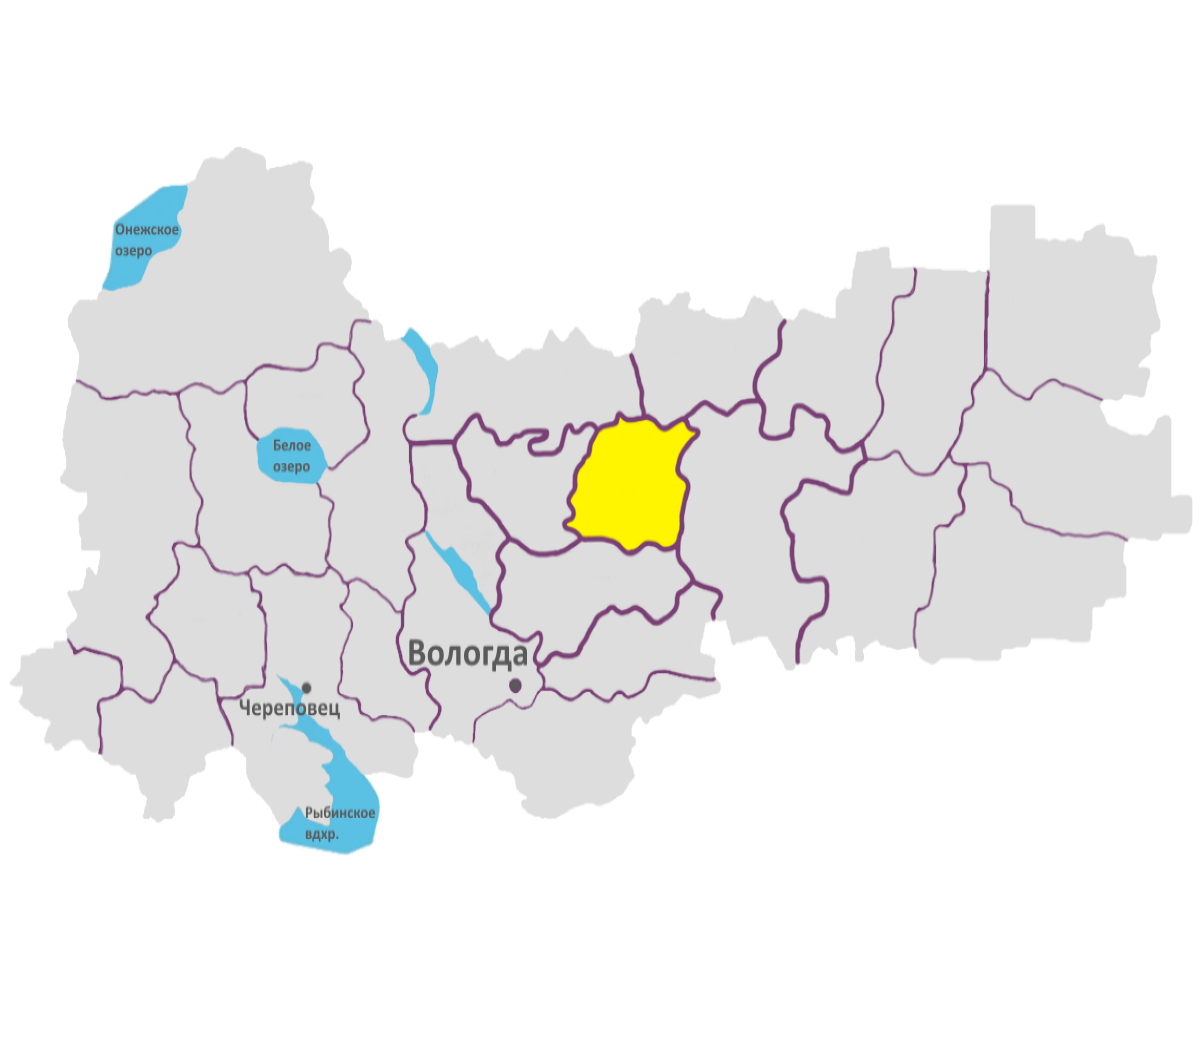 Сямженский округ на территории Вологодской области.